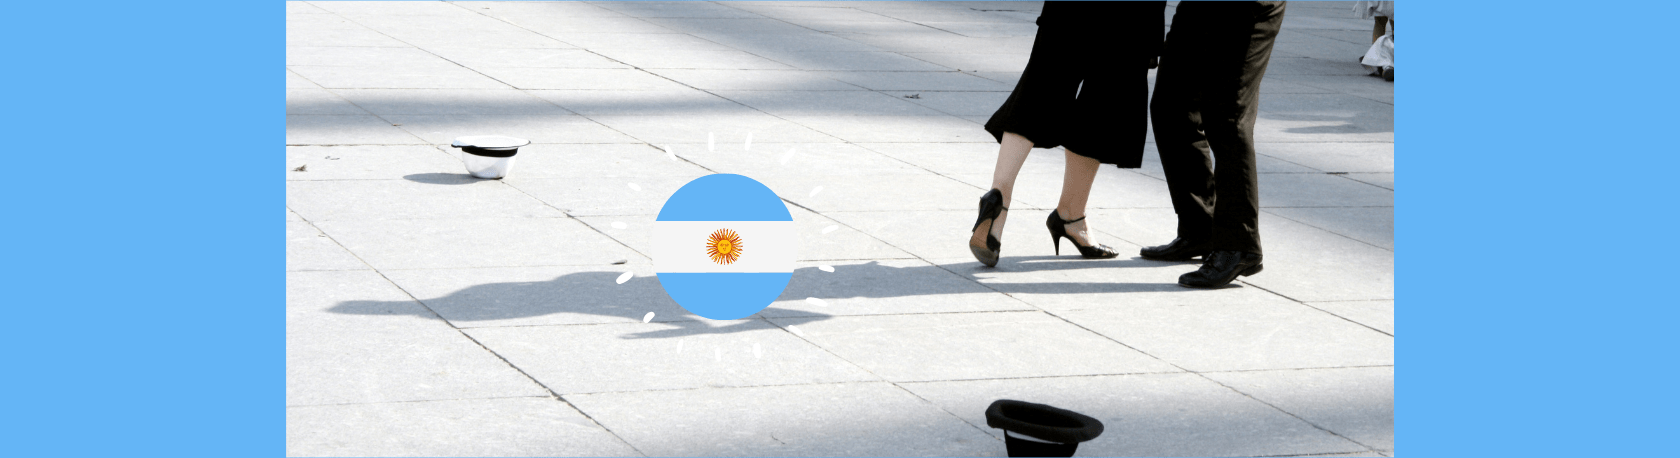 La palabra del día: Lunfardo - Easy Español